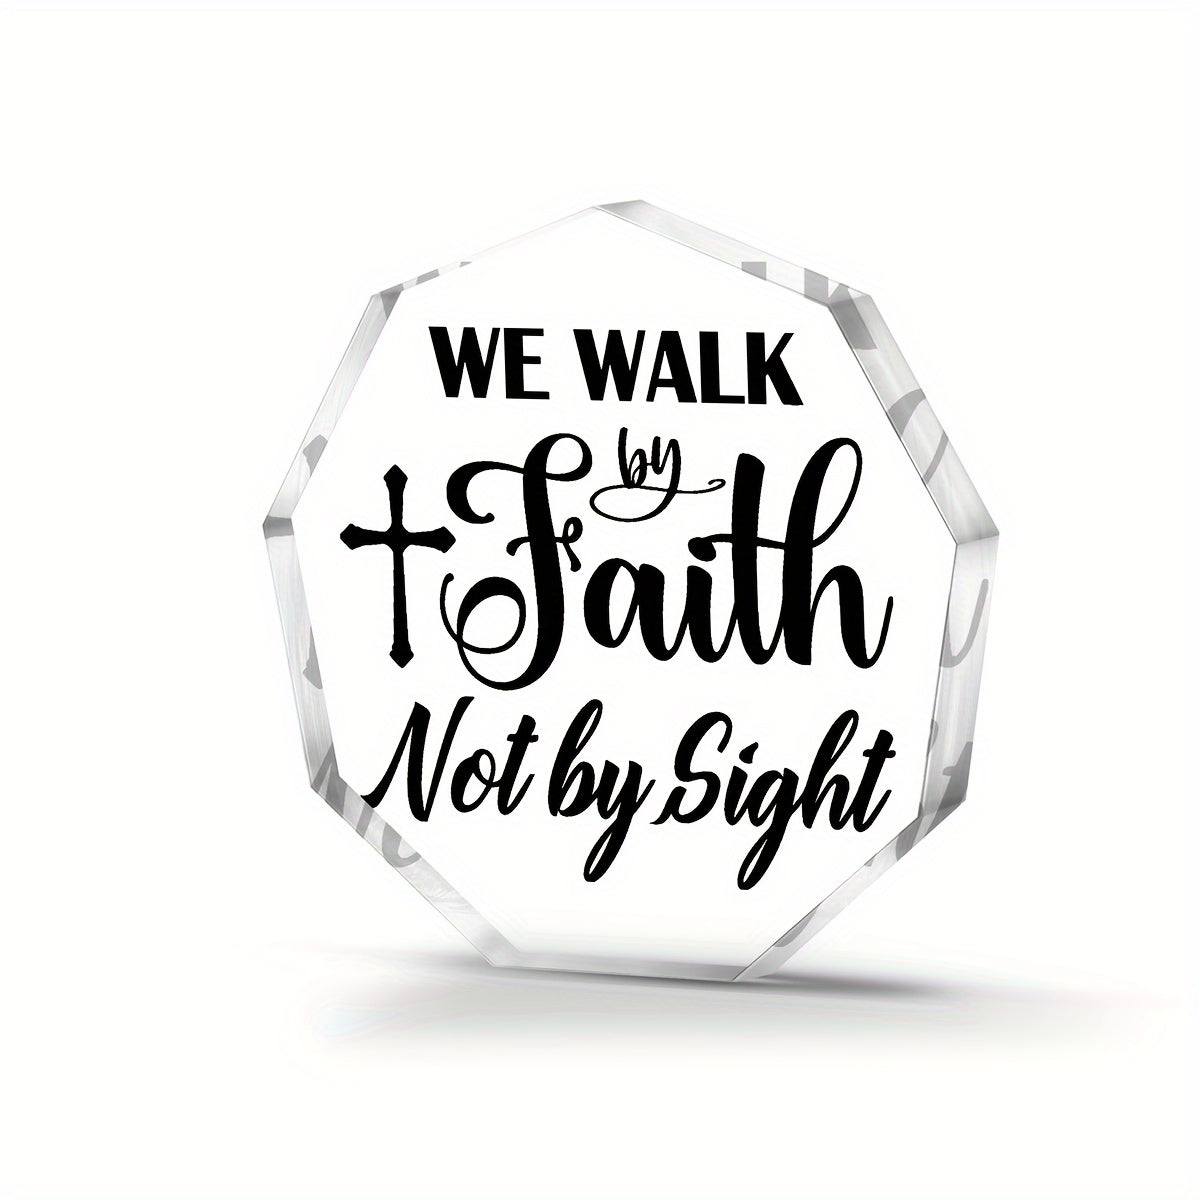 We Walk By Faith Not By Sight Acrylic Glass Ornament Christian Gift Idea claimedbygoddesigns